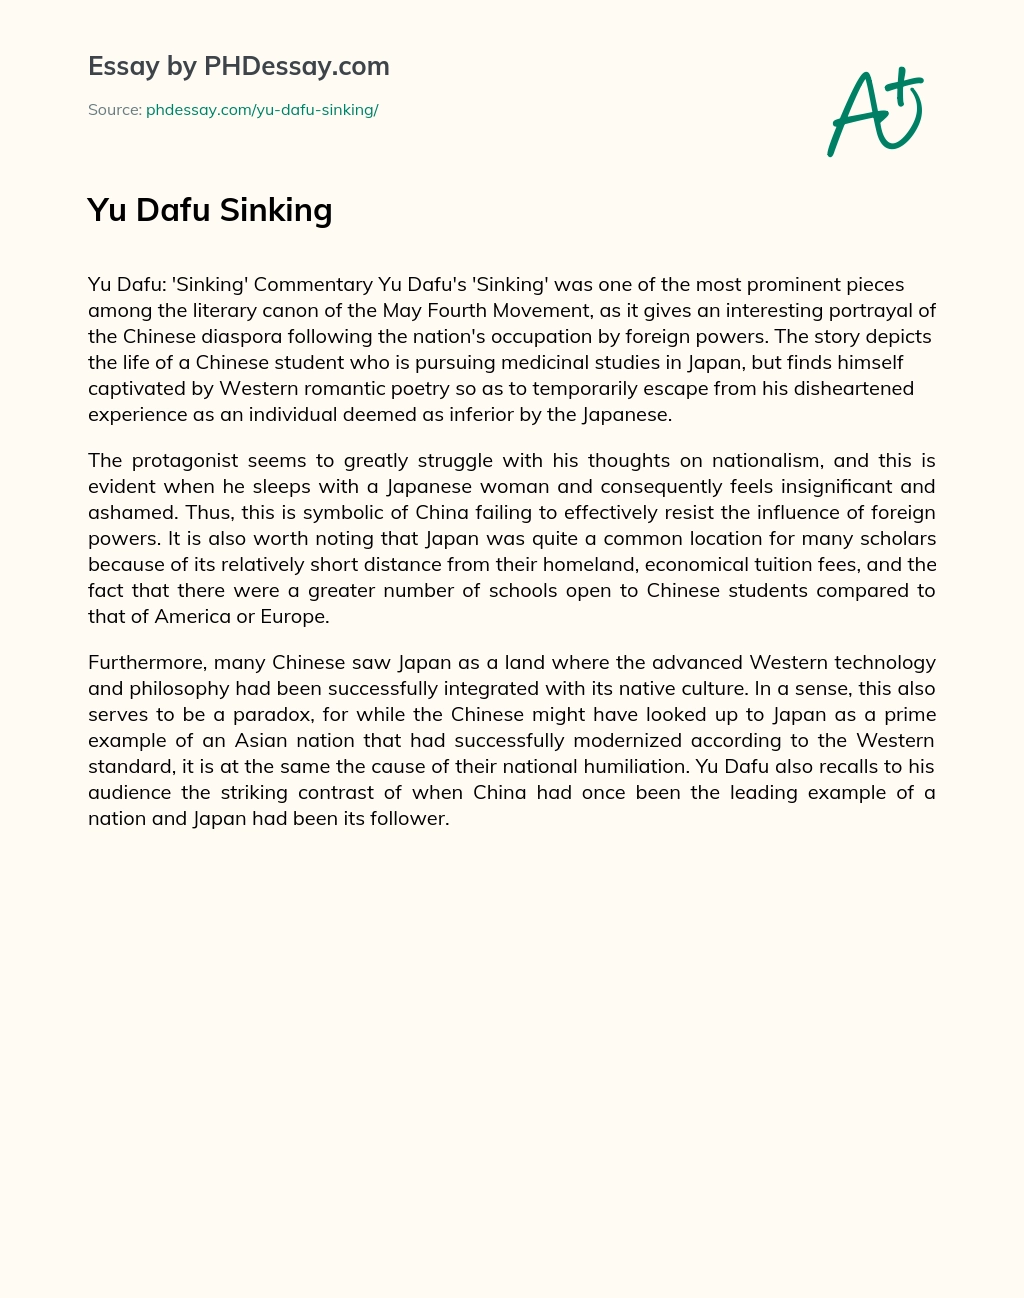 Yu Dafu Sinking essay